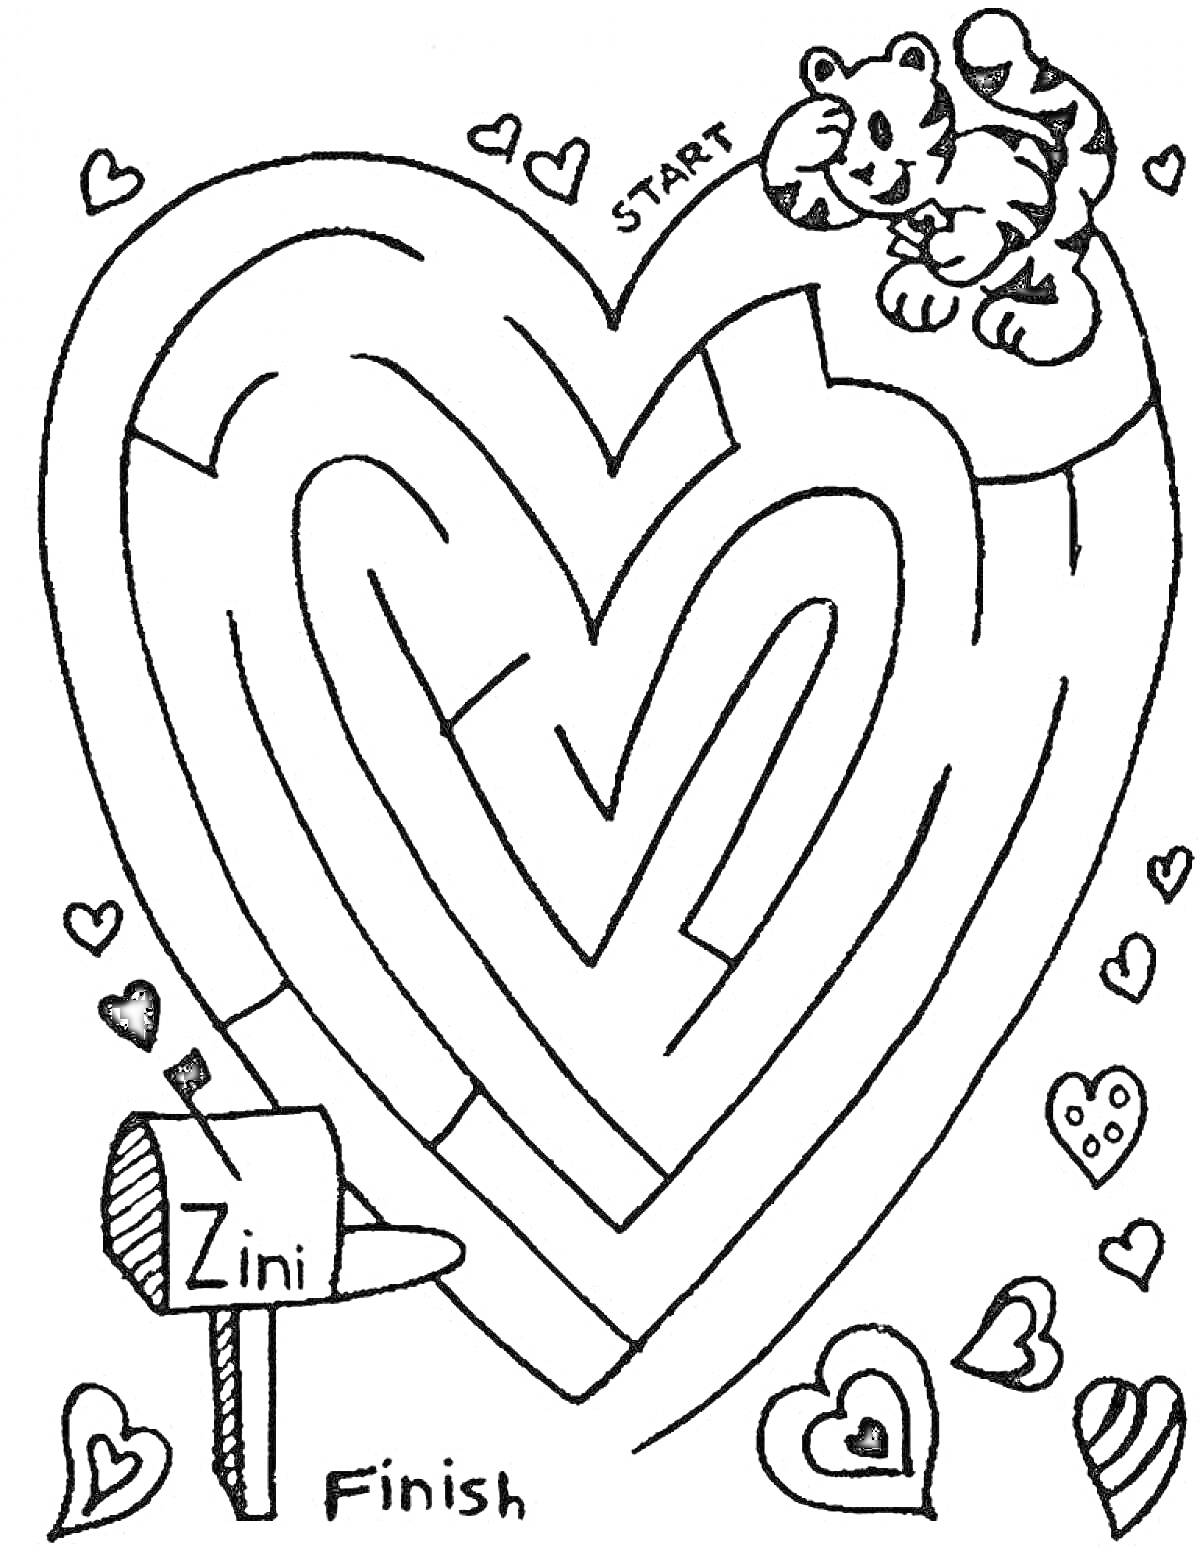 Раскраска Лабиринт в форме сердца с тигренком, почтовым ящиком и сердечками